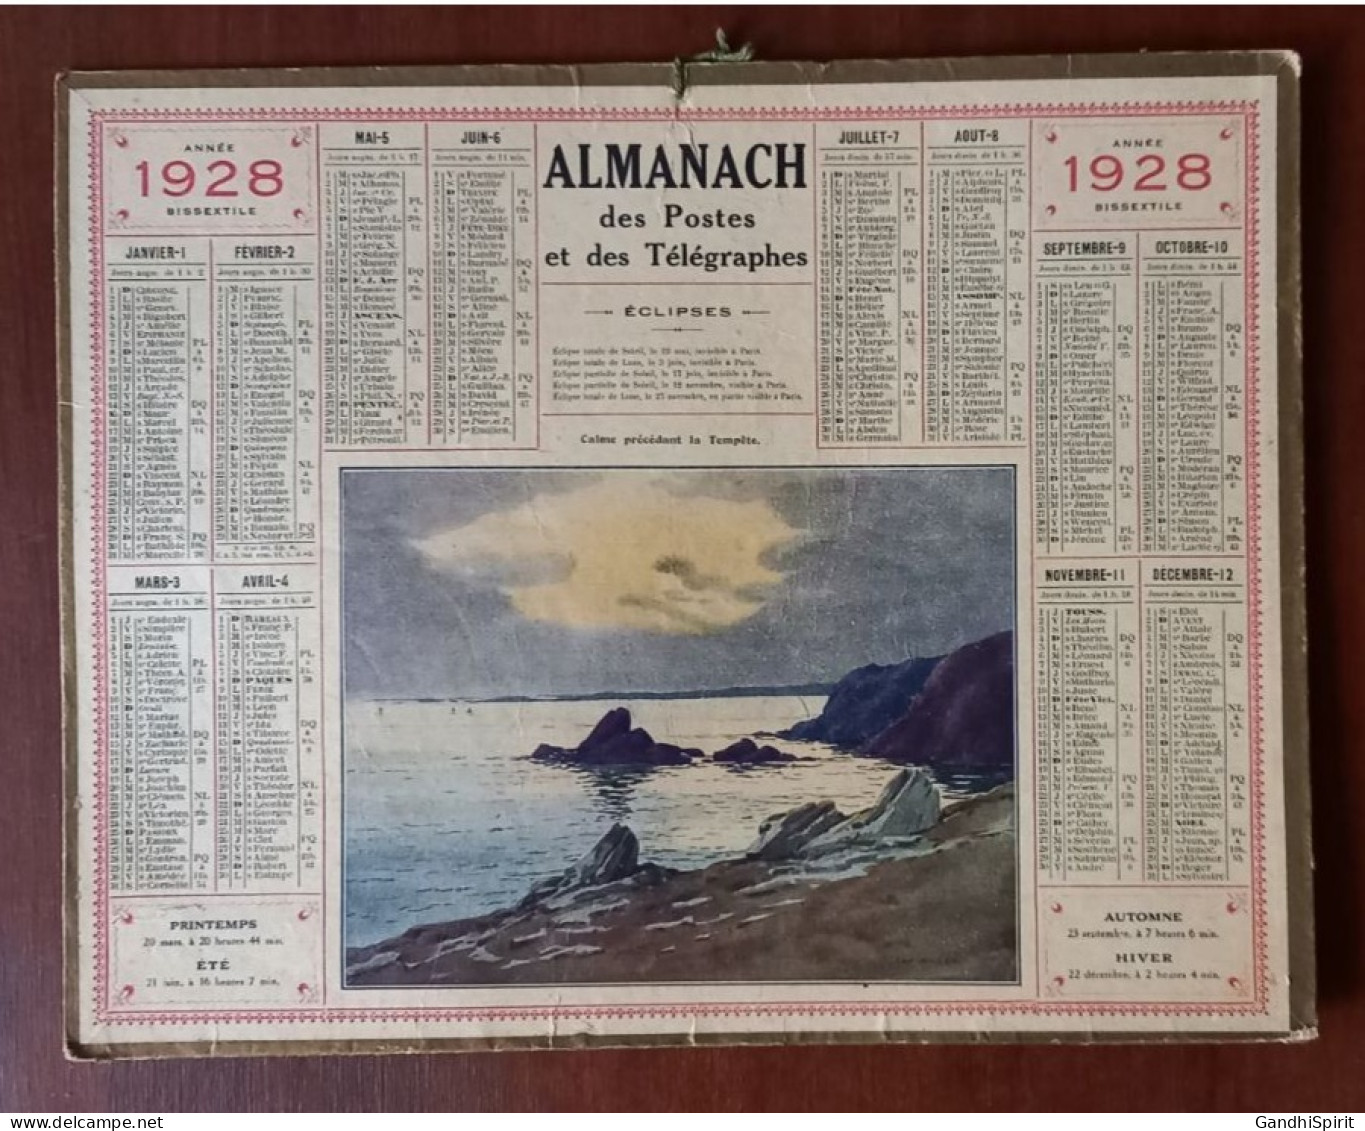 1928 Calendrier / Almanach Illustré Par ??? Calme Précédant La Tempête (Bord De Mer) Année Bissextile - Big : 1921-40